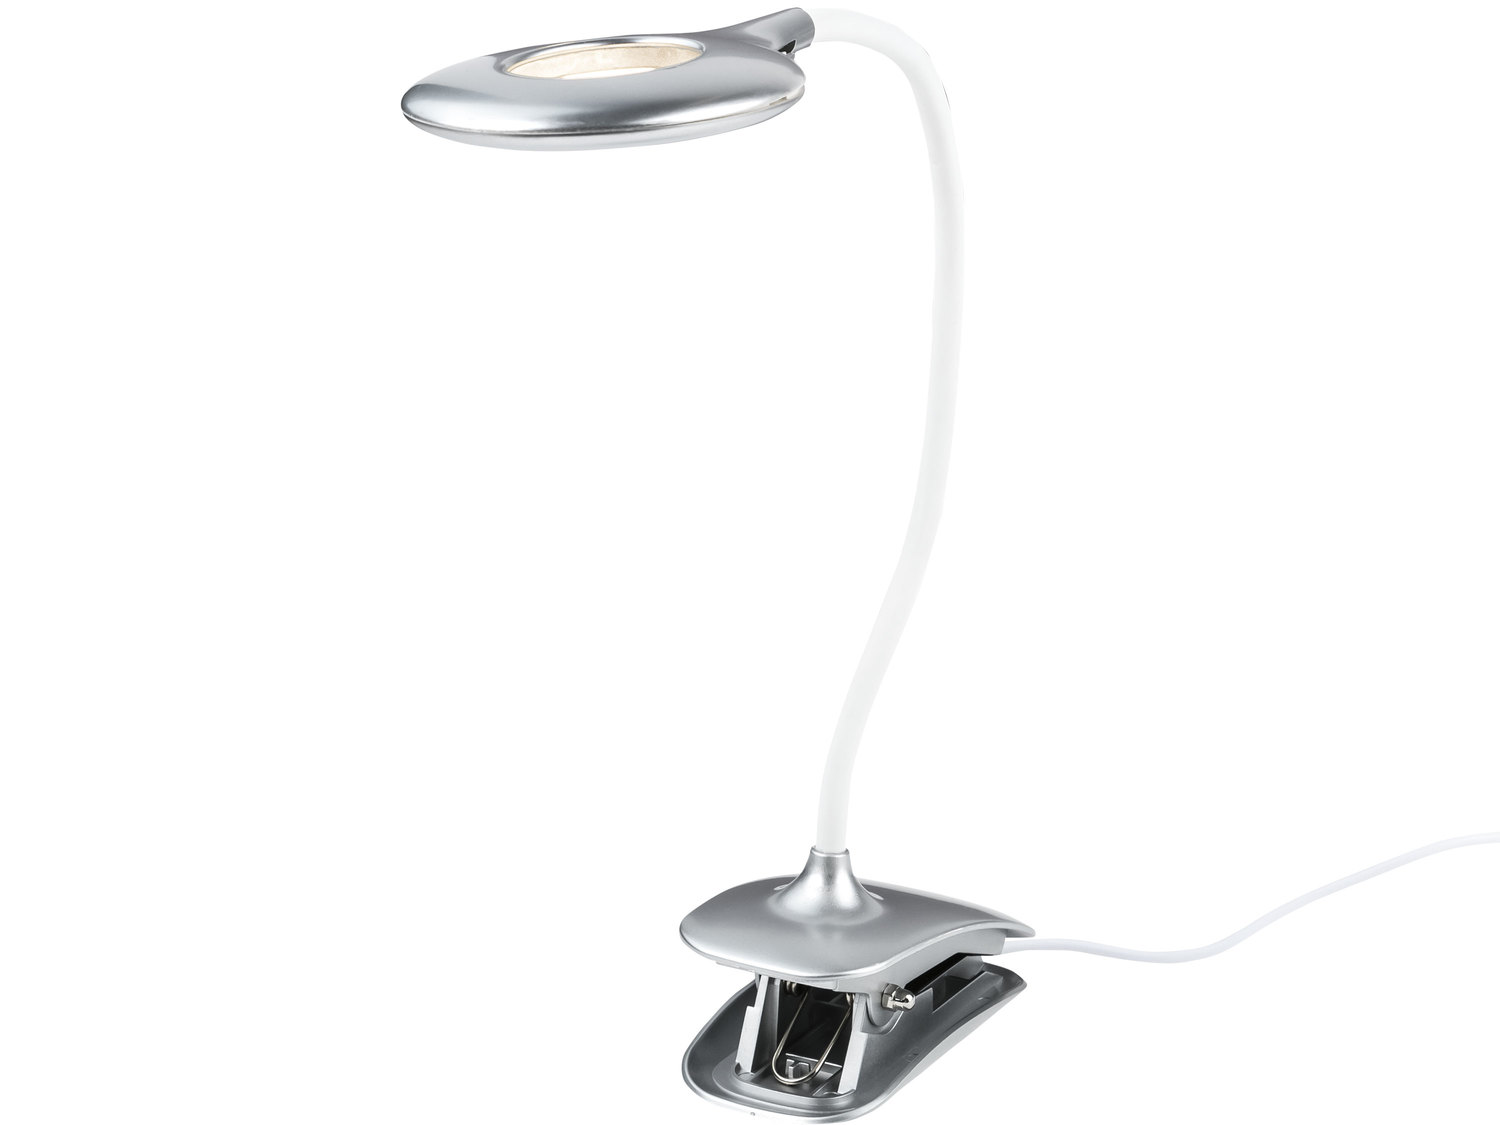 Lampa stołowa LED, 5 W Livarno Lux, cena 59,90 PLN 
OSZCZĘDNOŚĆ ENERGII AŻ ...